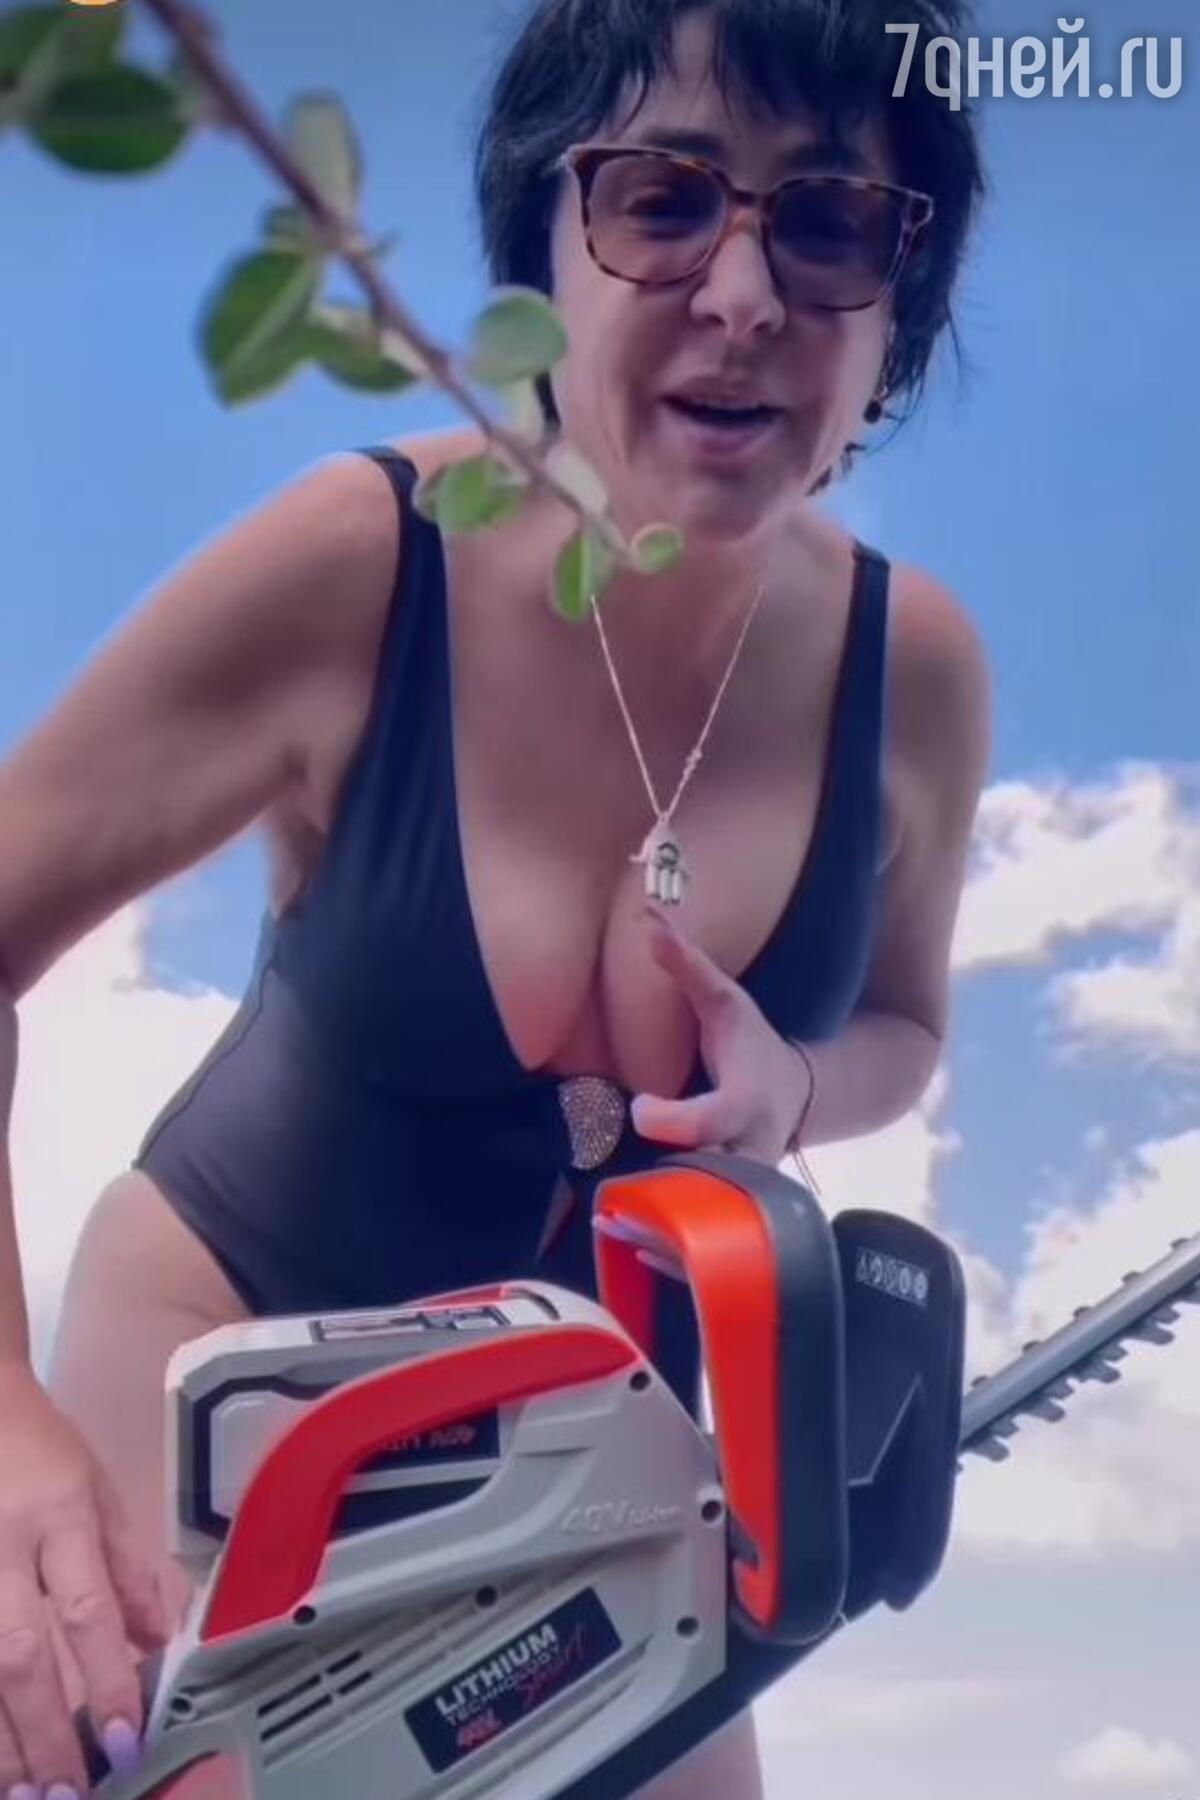 Лолита Милявская показала «шикарную грудь» на откровенном видео